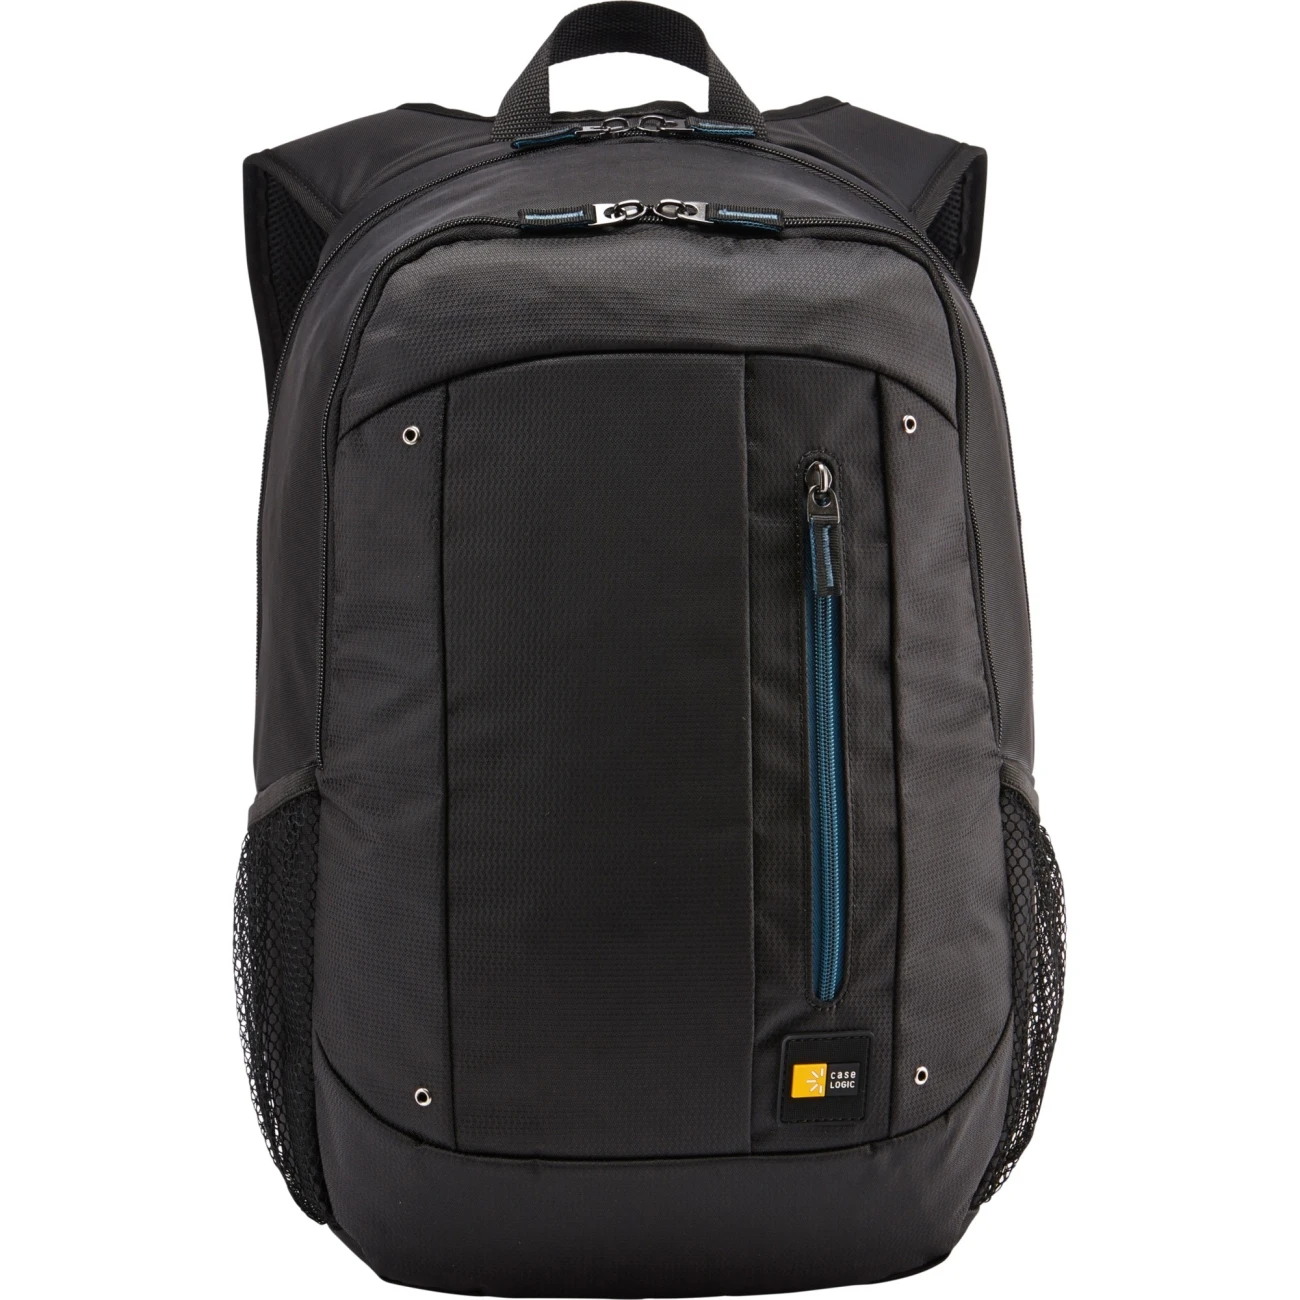 Waterproof Outdoor Sport Lightweight backpack bag